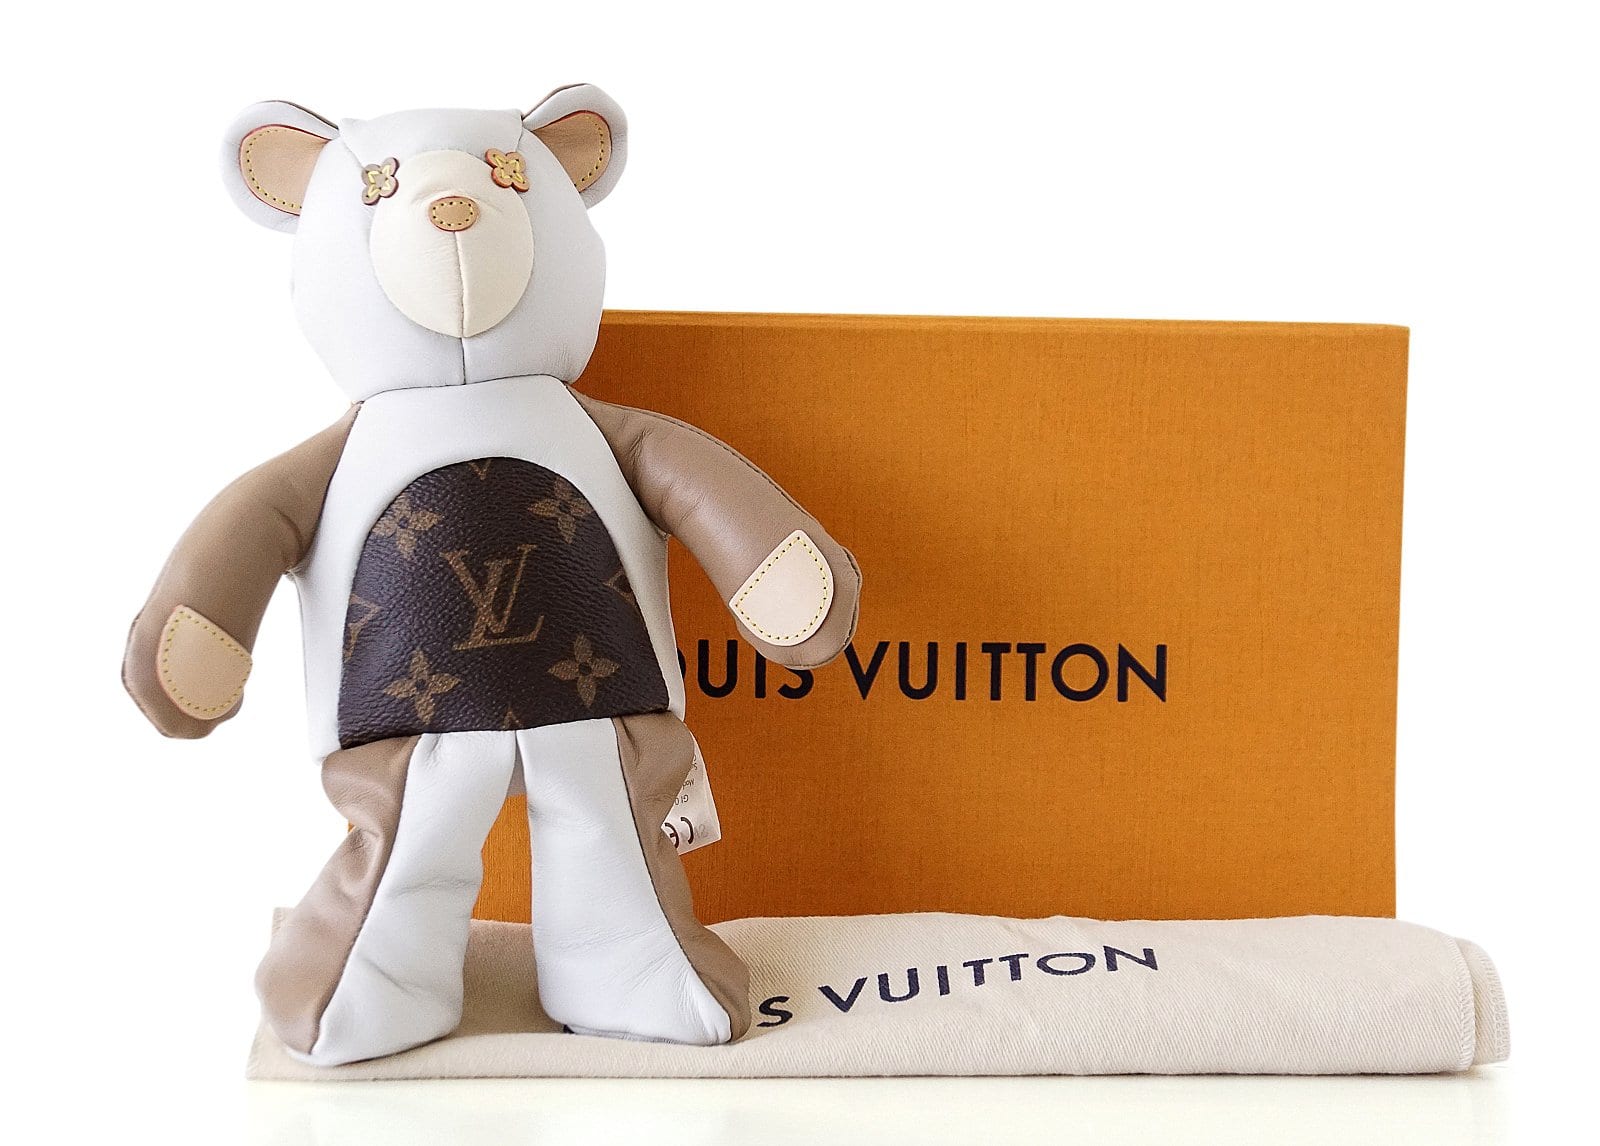 Louis Vuitton Teddy 